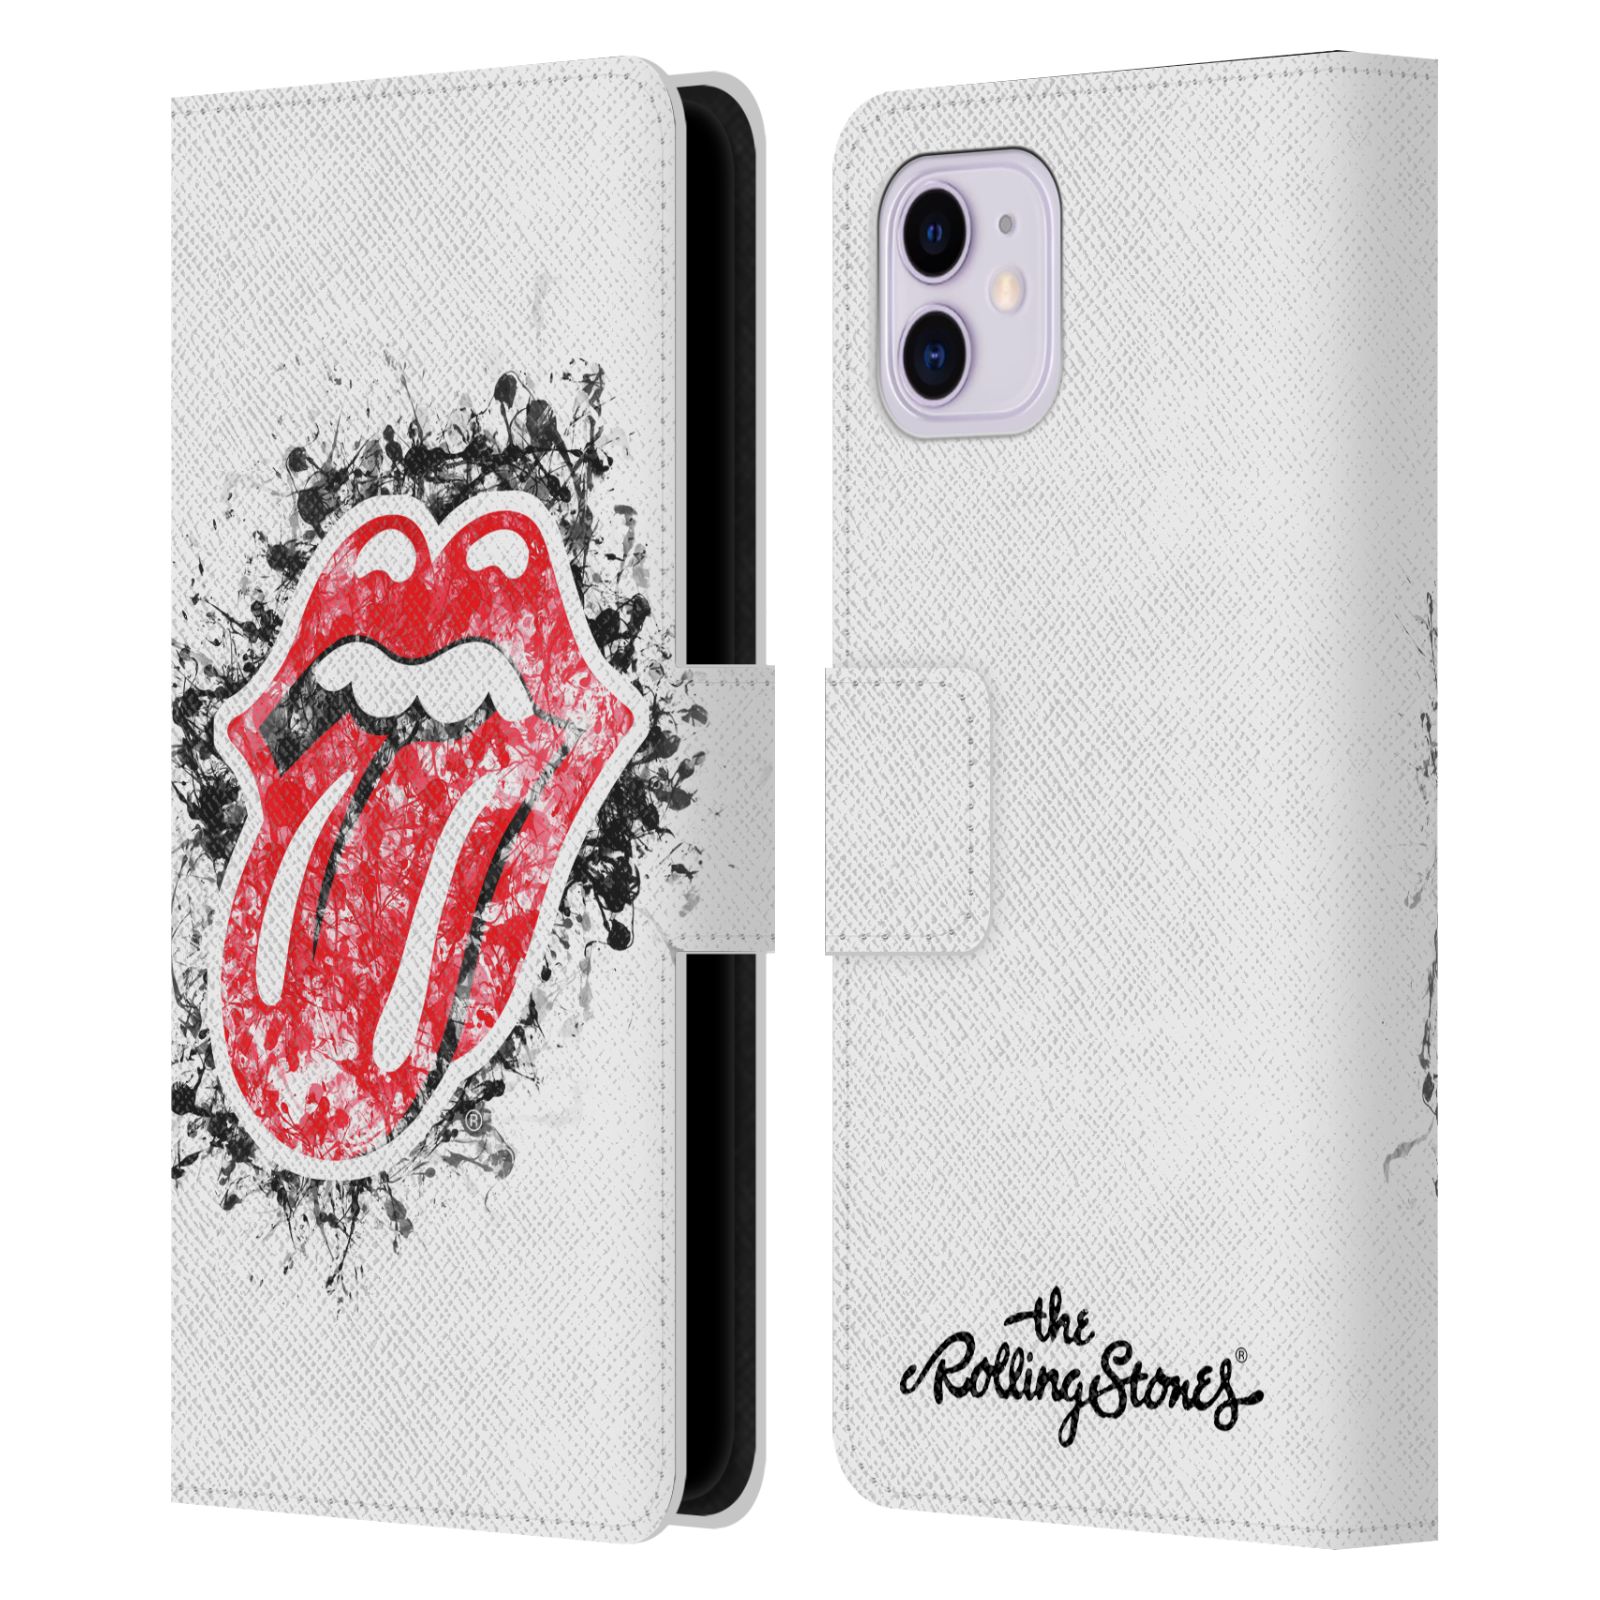 Pouzdro na mobil Apple Iphone 11 - Head Case - Rolling Stones - Logo bílé pozadí